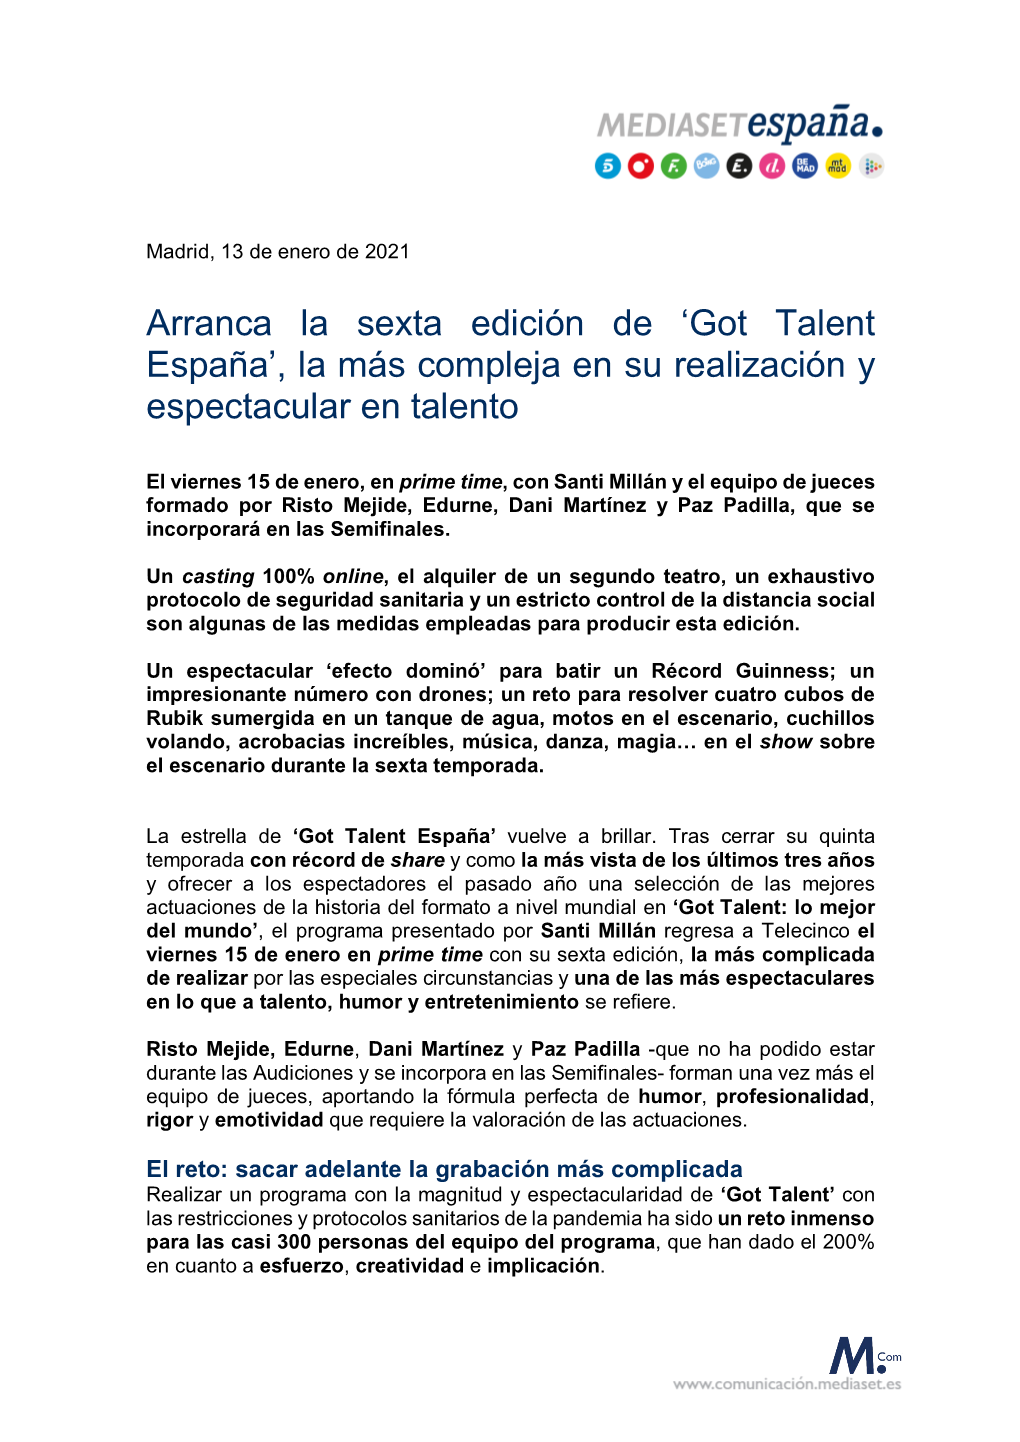 Arranca La Sexta Edición De 'Got Talent España', La Más Compleja En Su